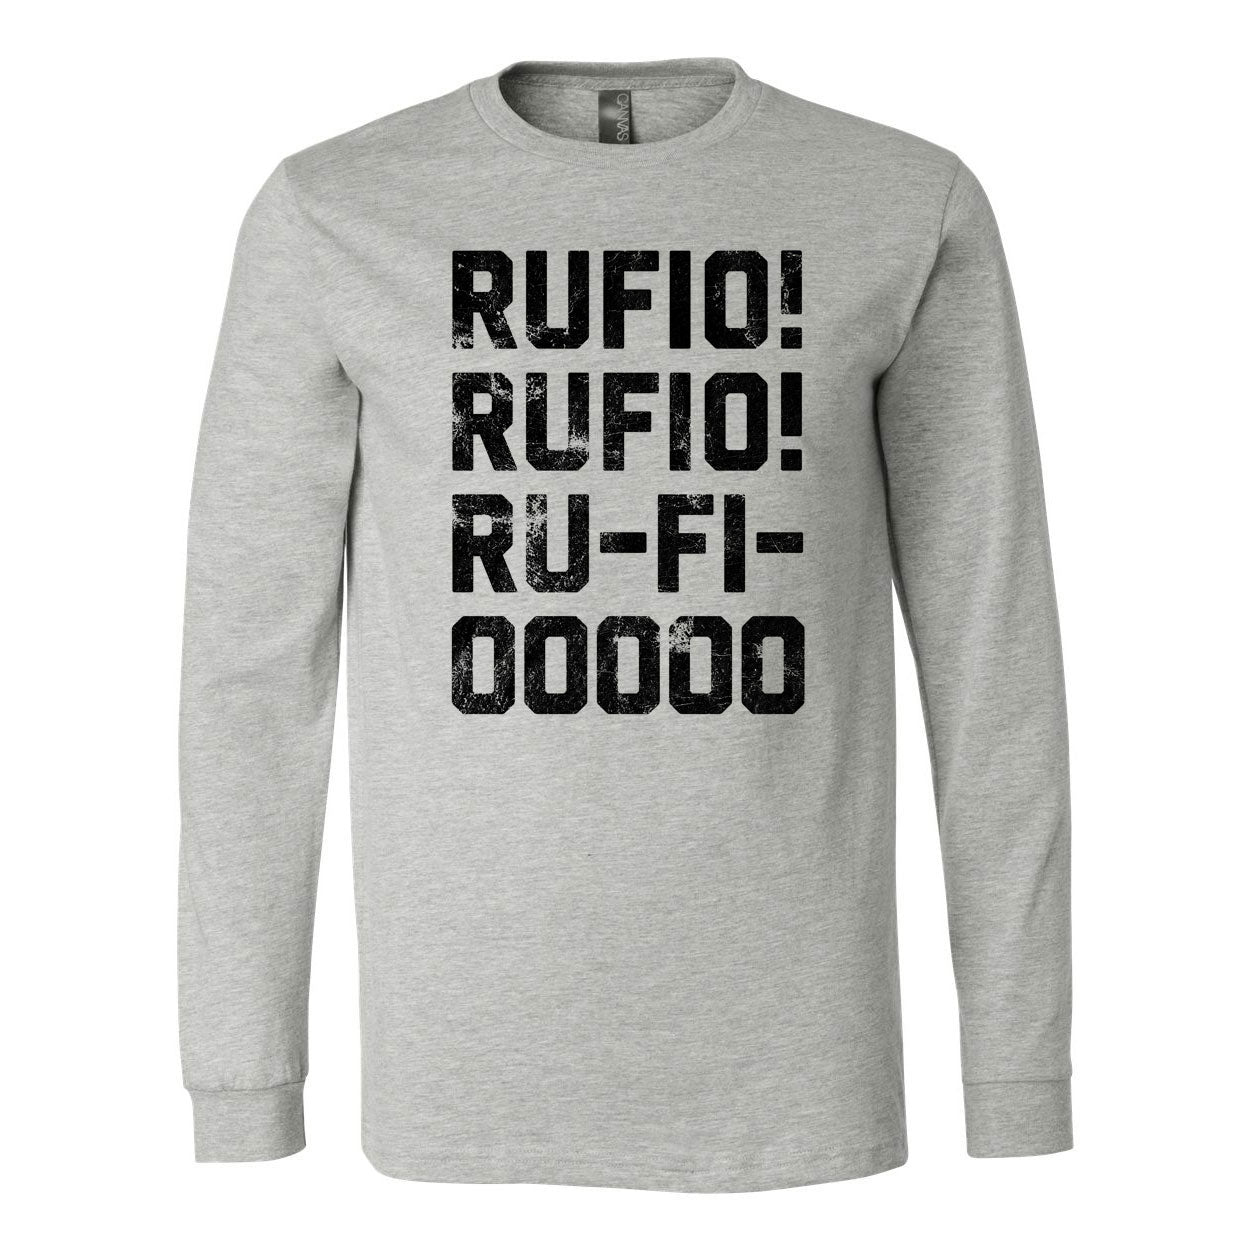 RufioZuko - Rufiooo Long Sleeve Tee